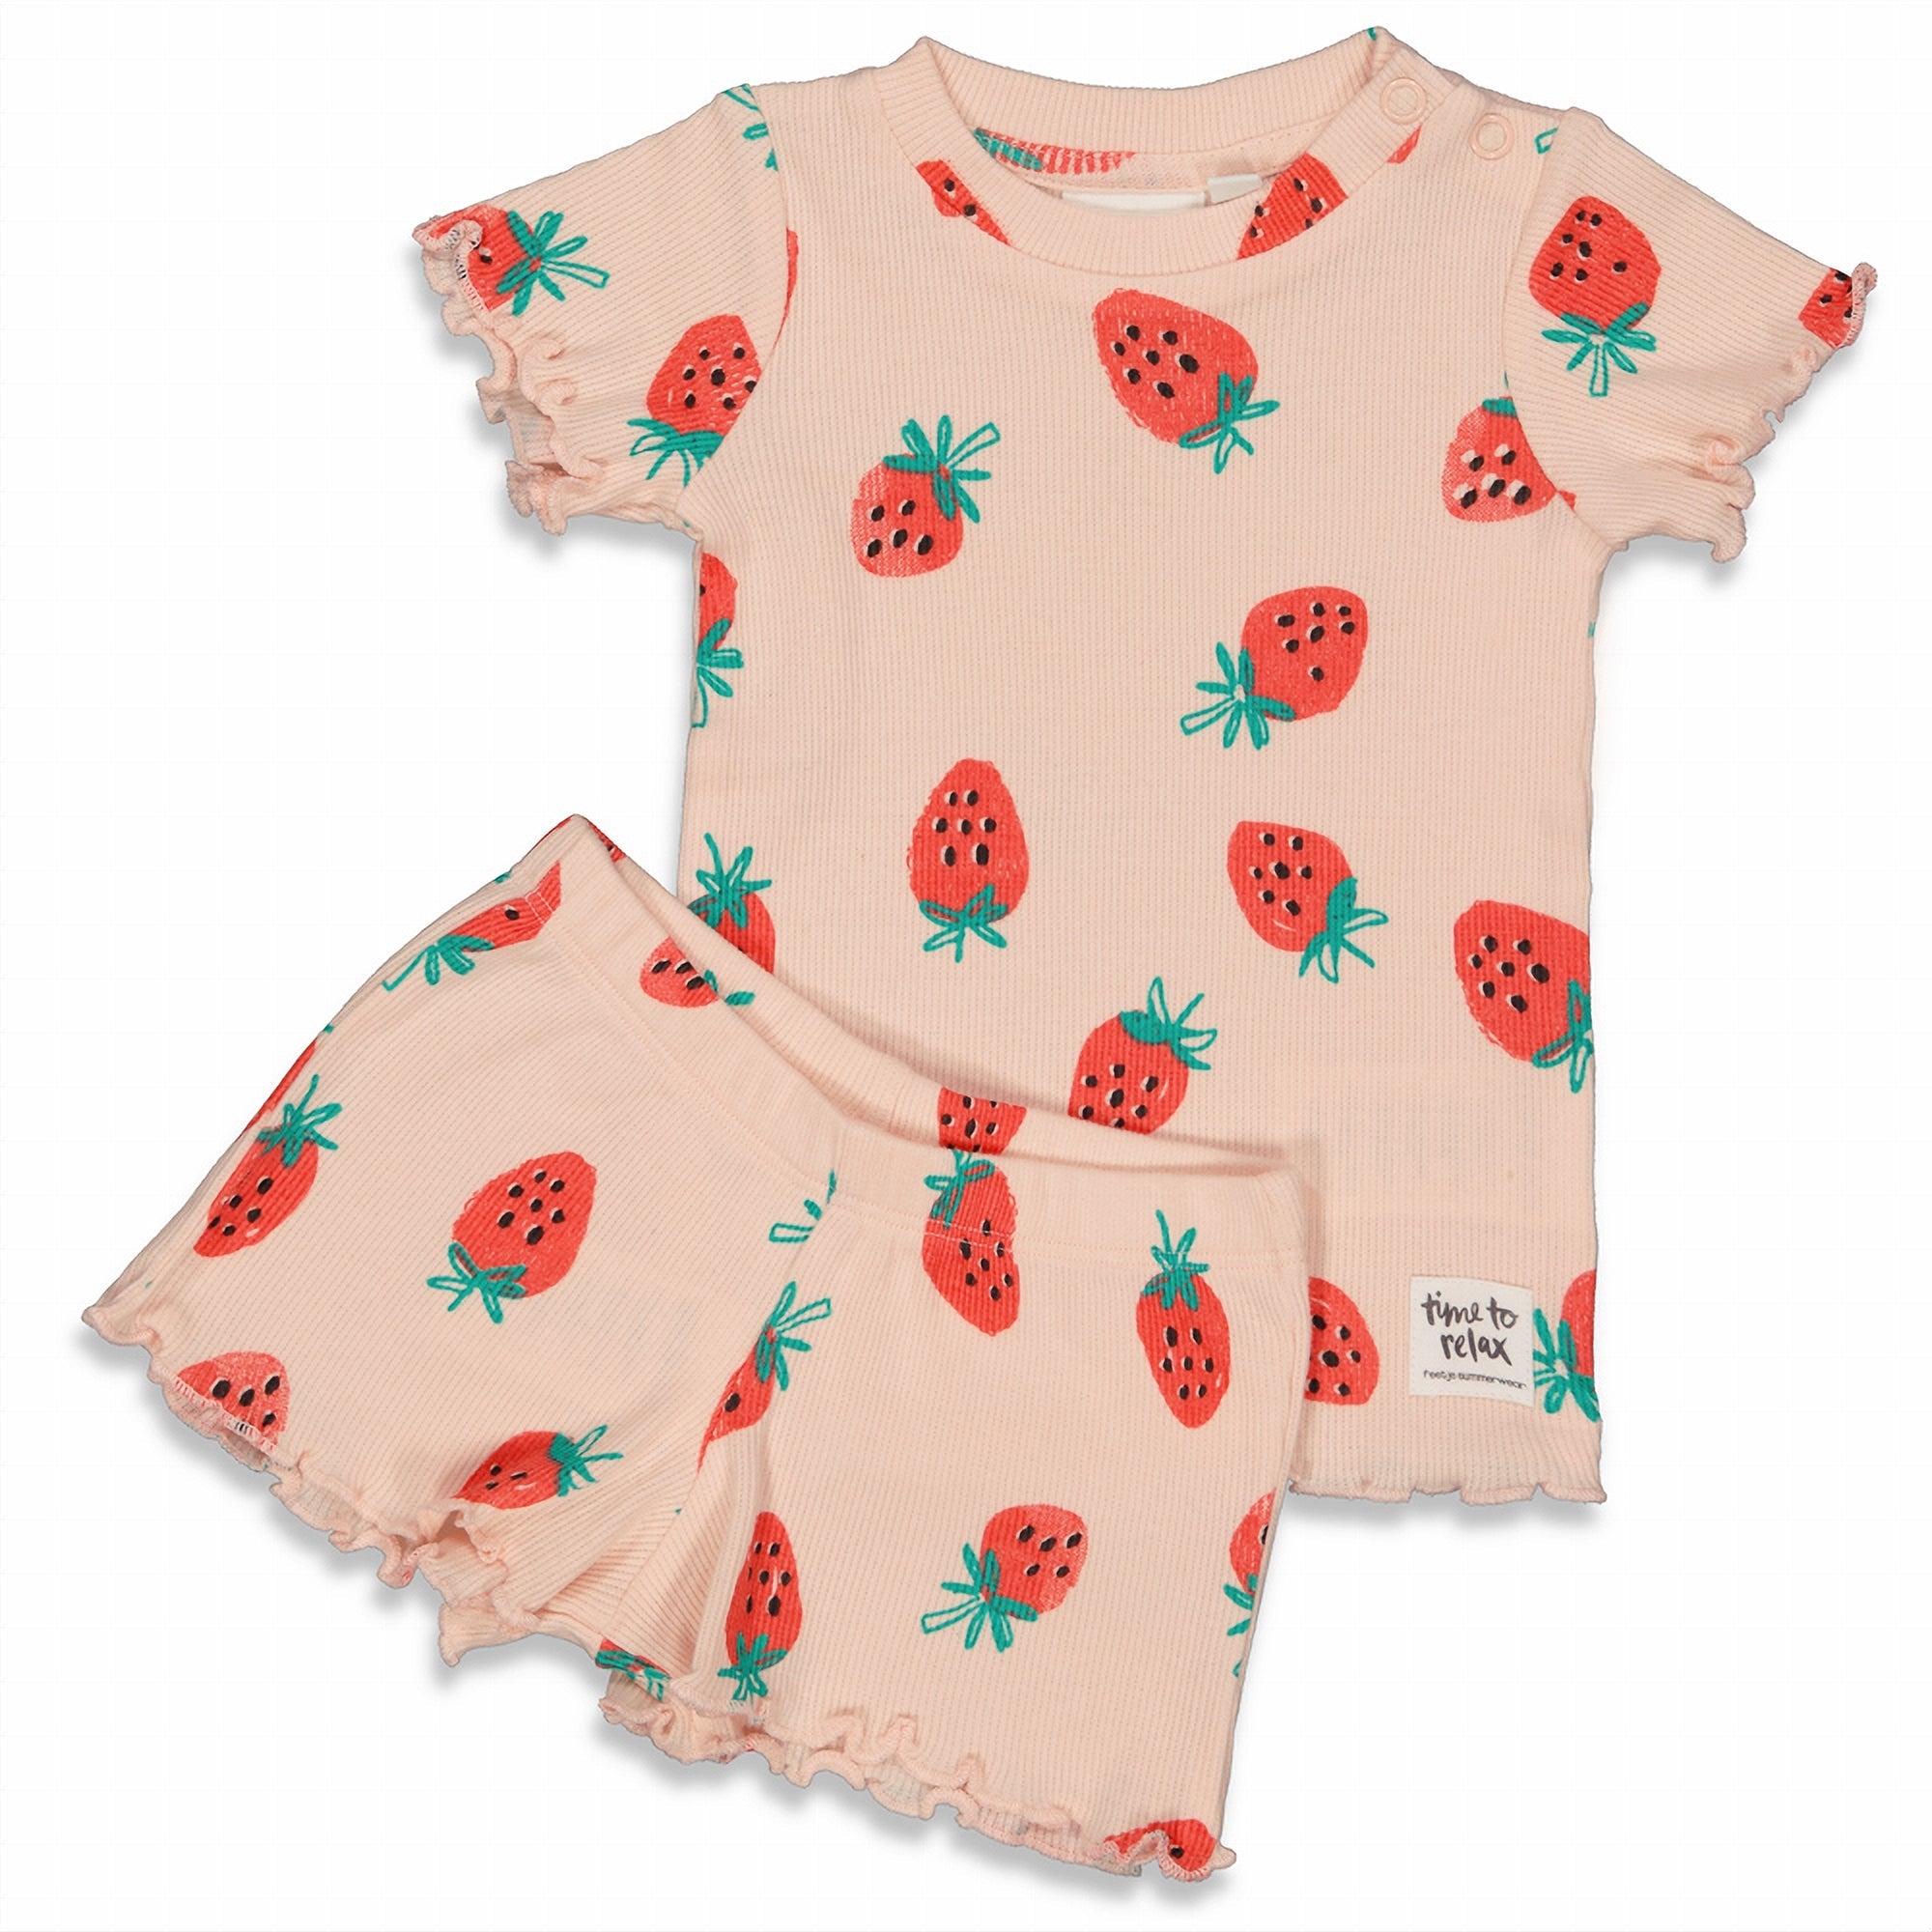 Meisjes Suzy Strawberry - Premium Summerwear by FEETJE van Feetje in de kleur Roze in maat 152.